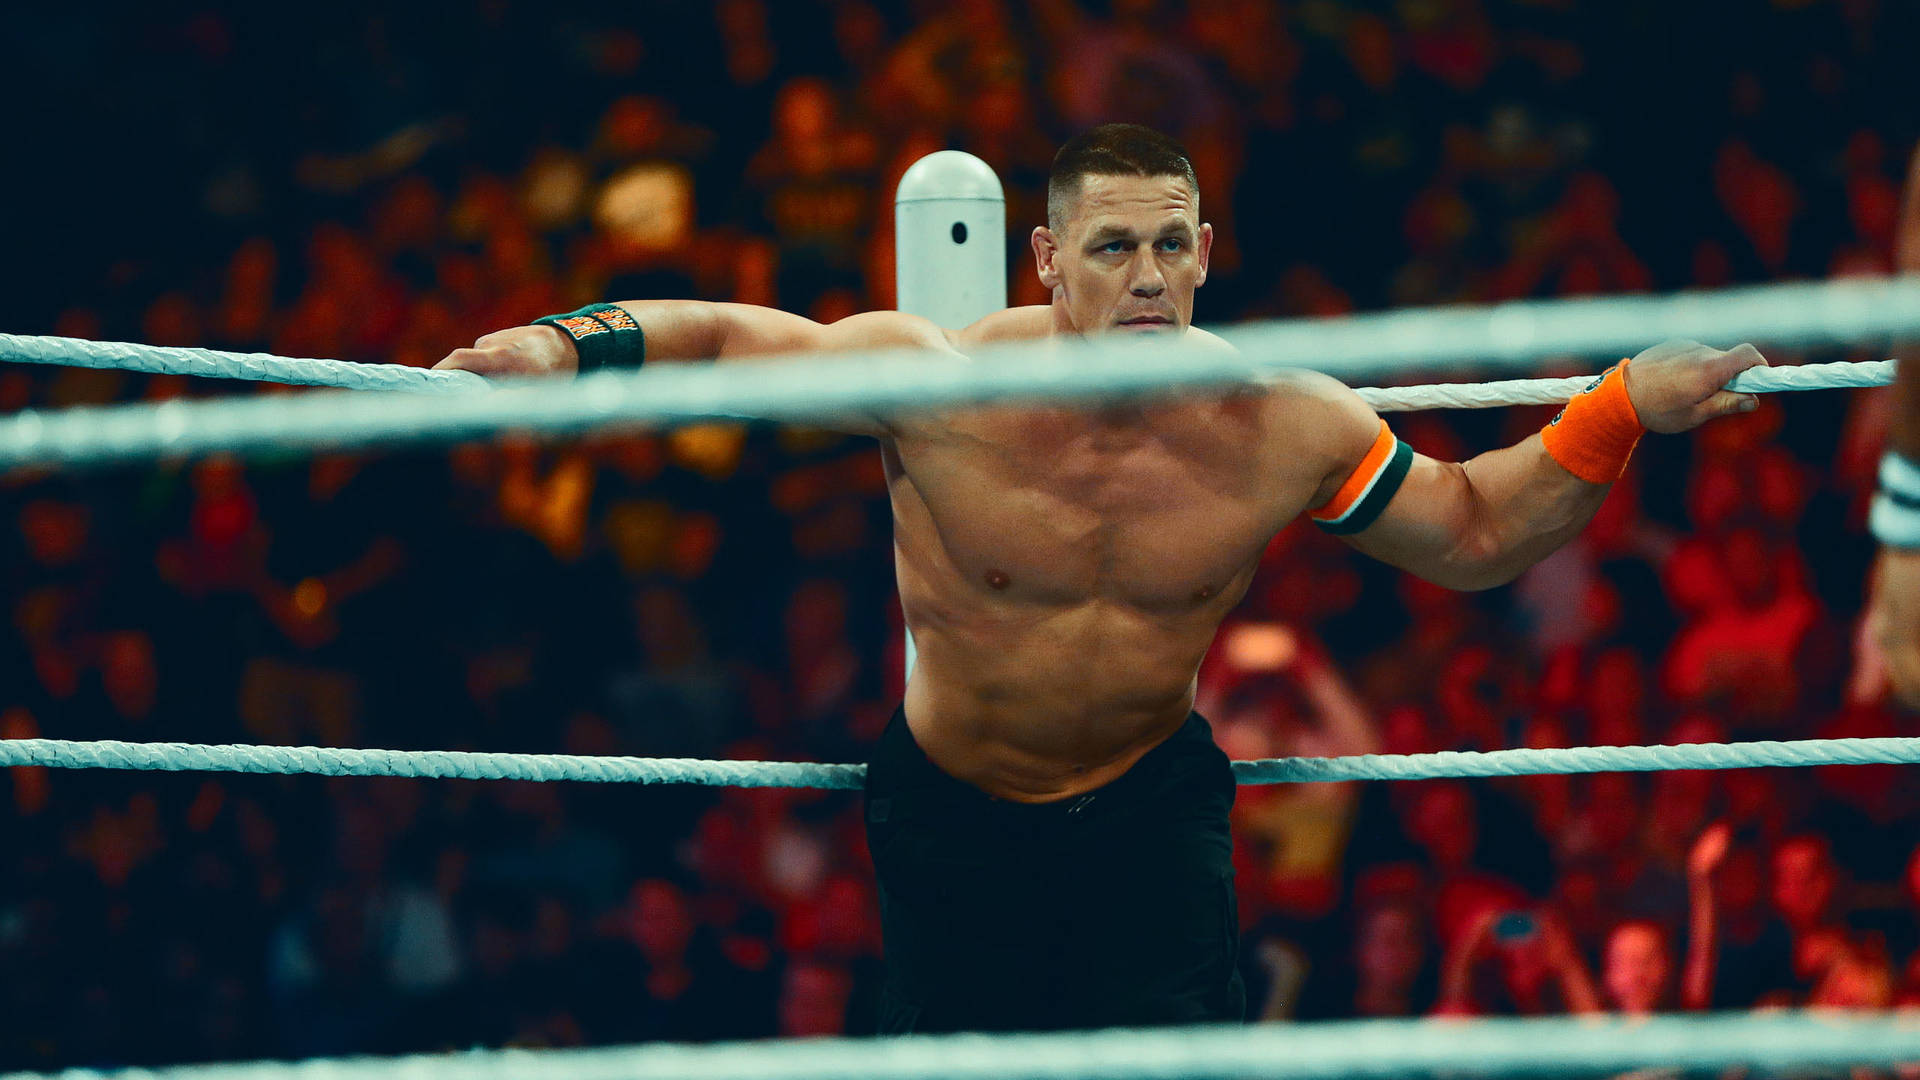 John Cena In The Ring